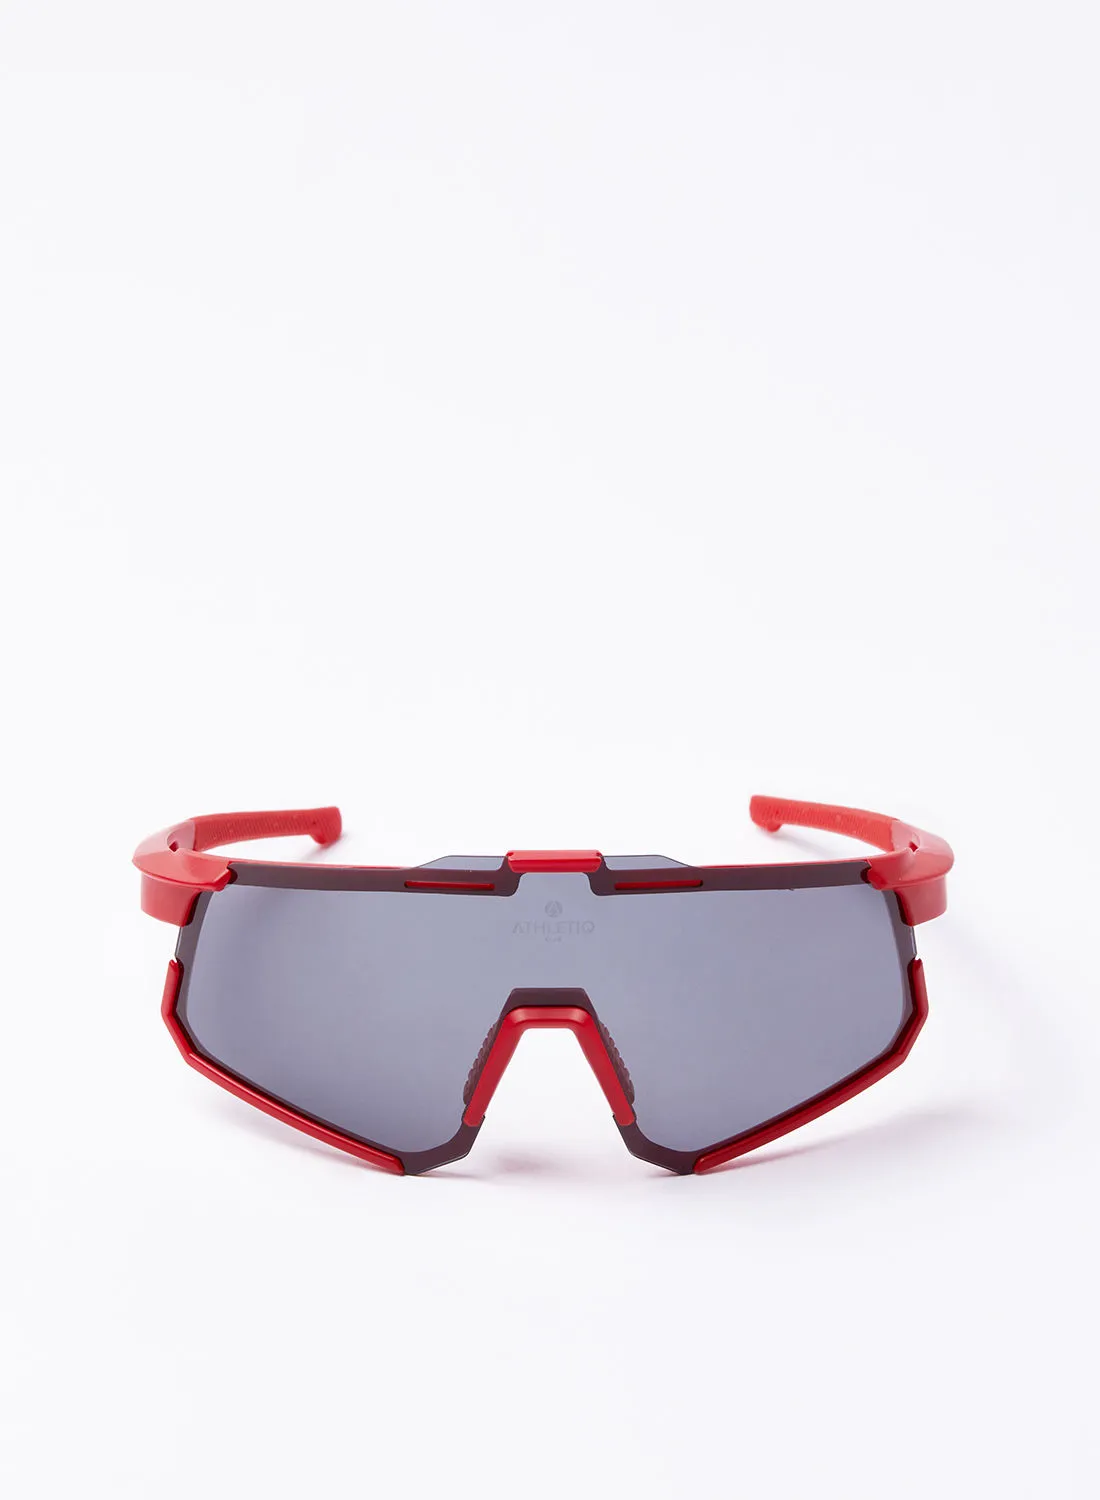 نظارة شمسية رياضية لركوب الدراجات من أتليتيك كلوب جبل سودا - إطار أحمر مع عدسة دخانية سوداء متعددة الطبقات